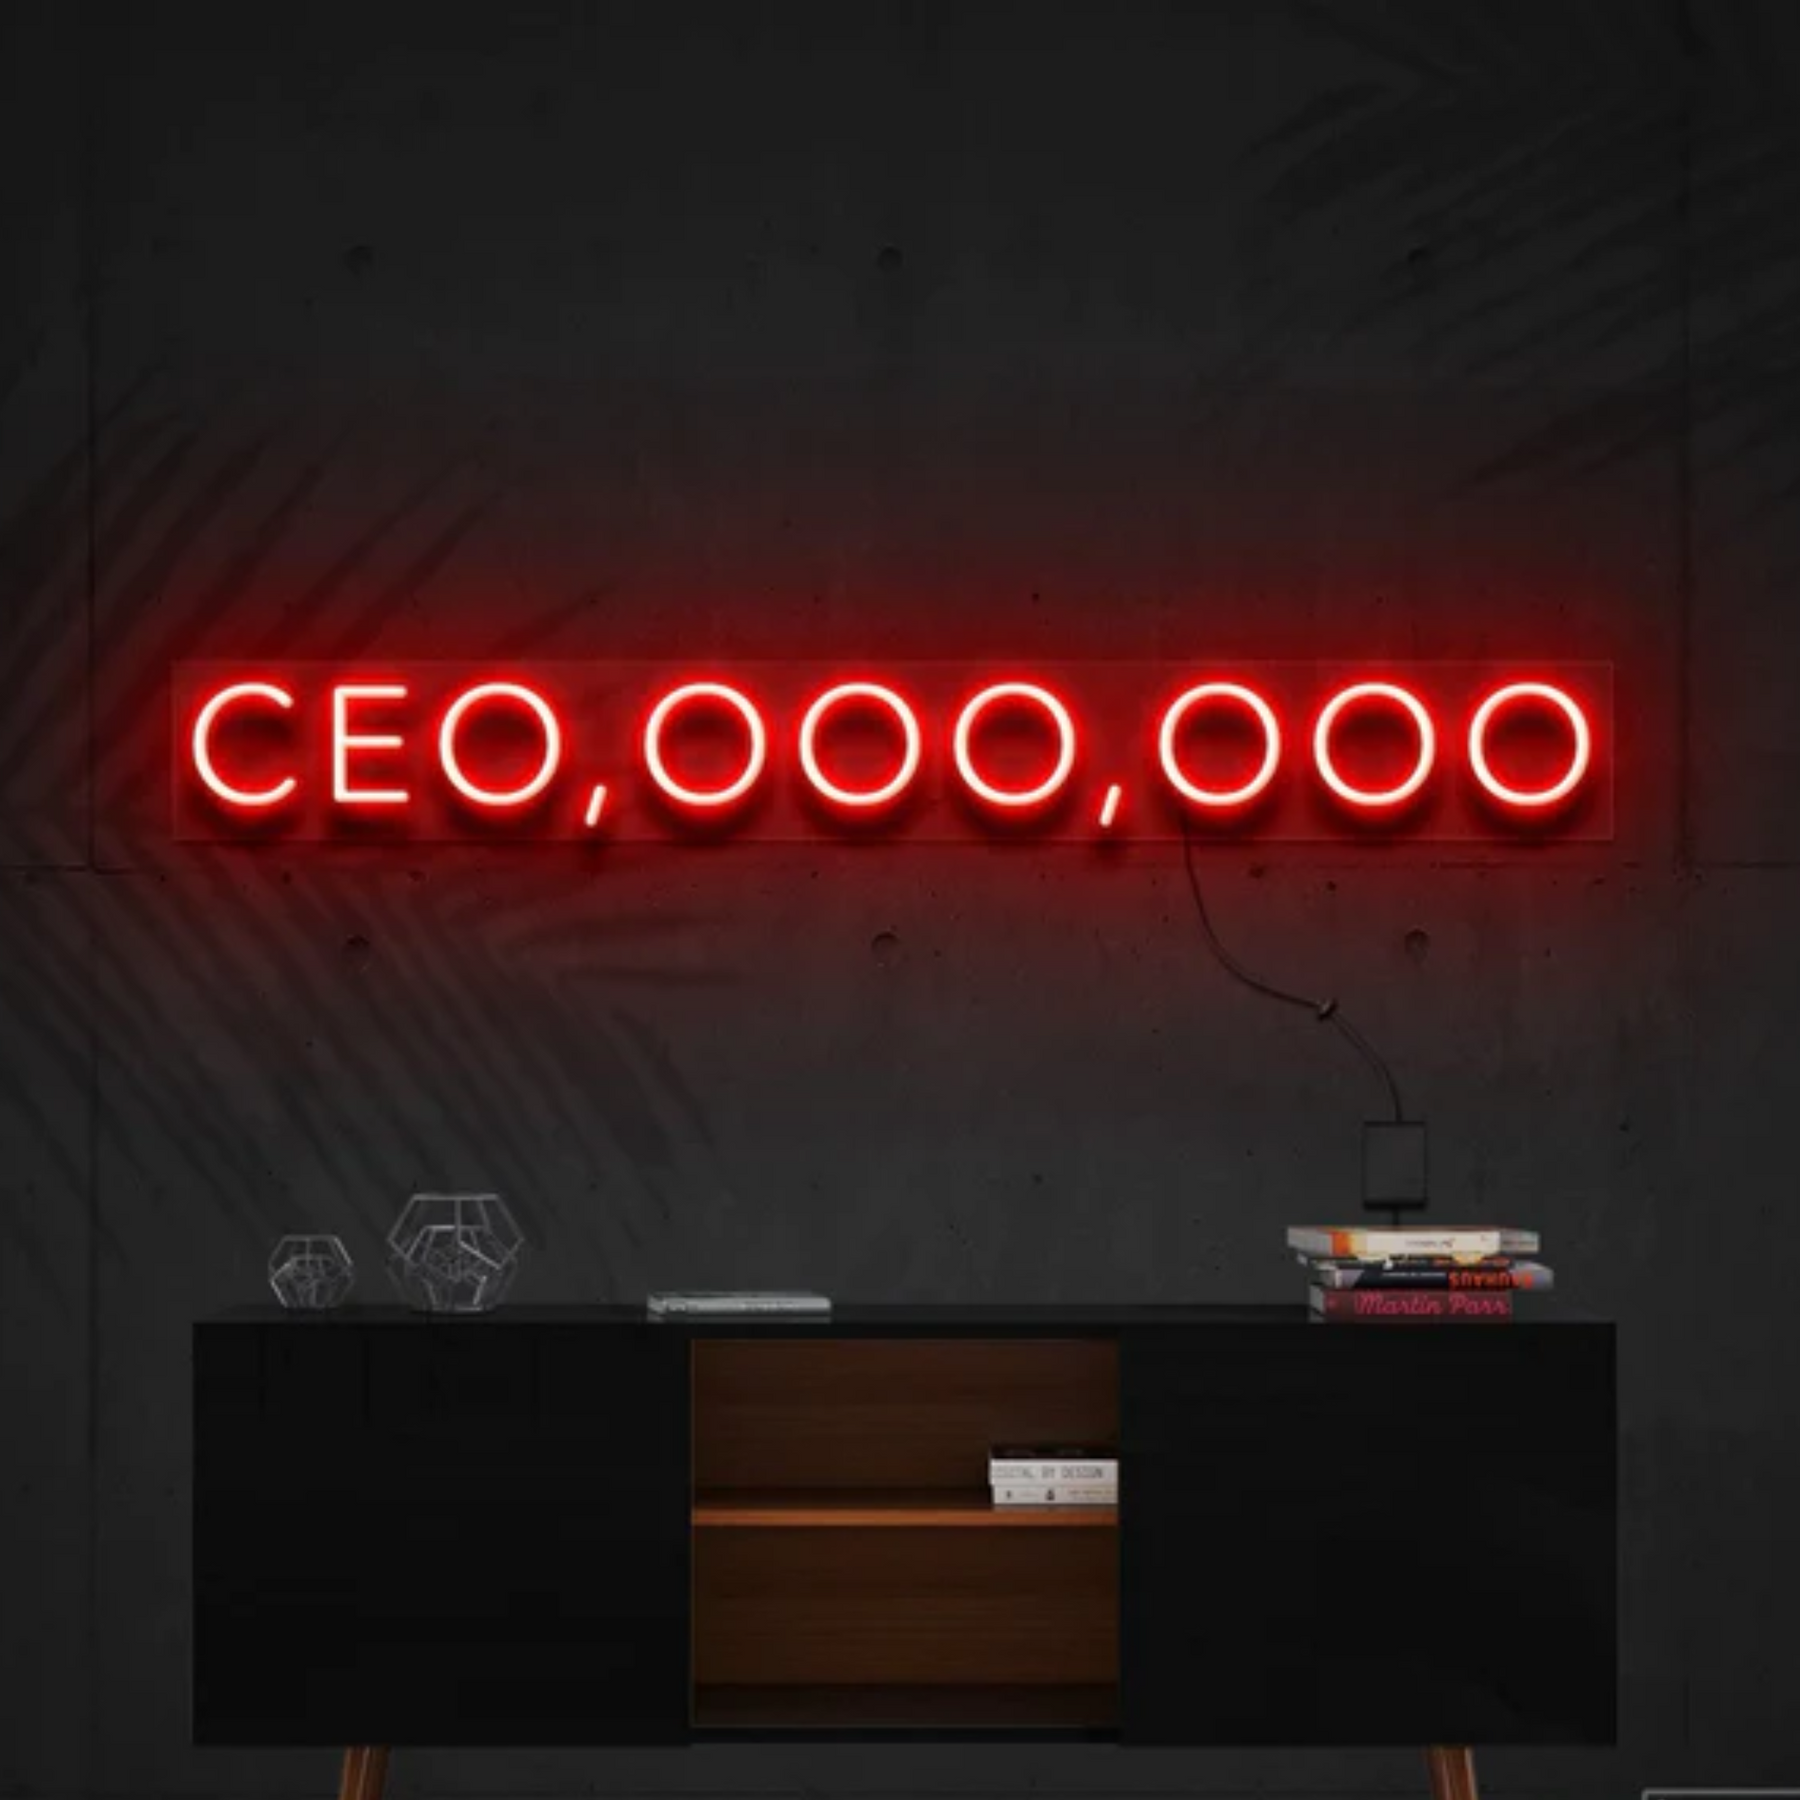 CEO, OOO, OOO